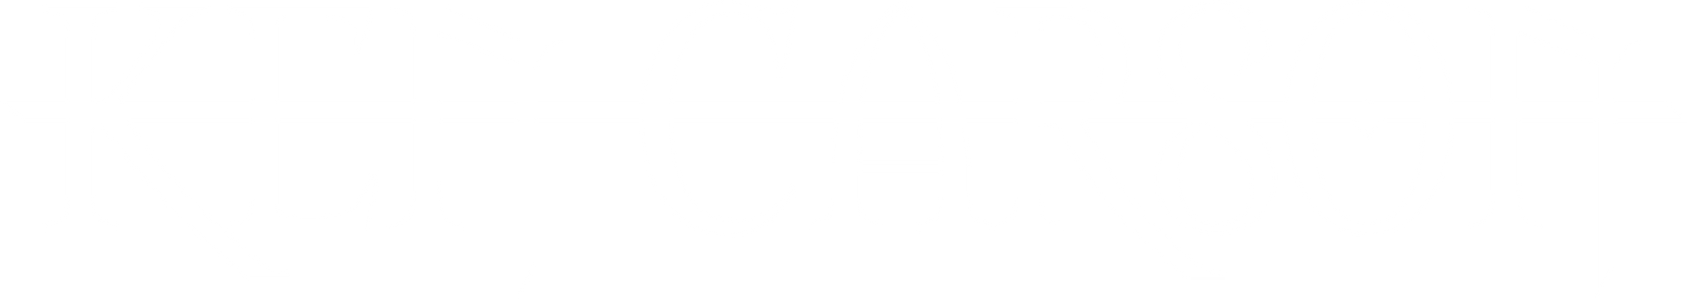 Ken Carson Official Store logo